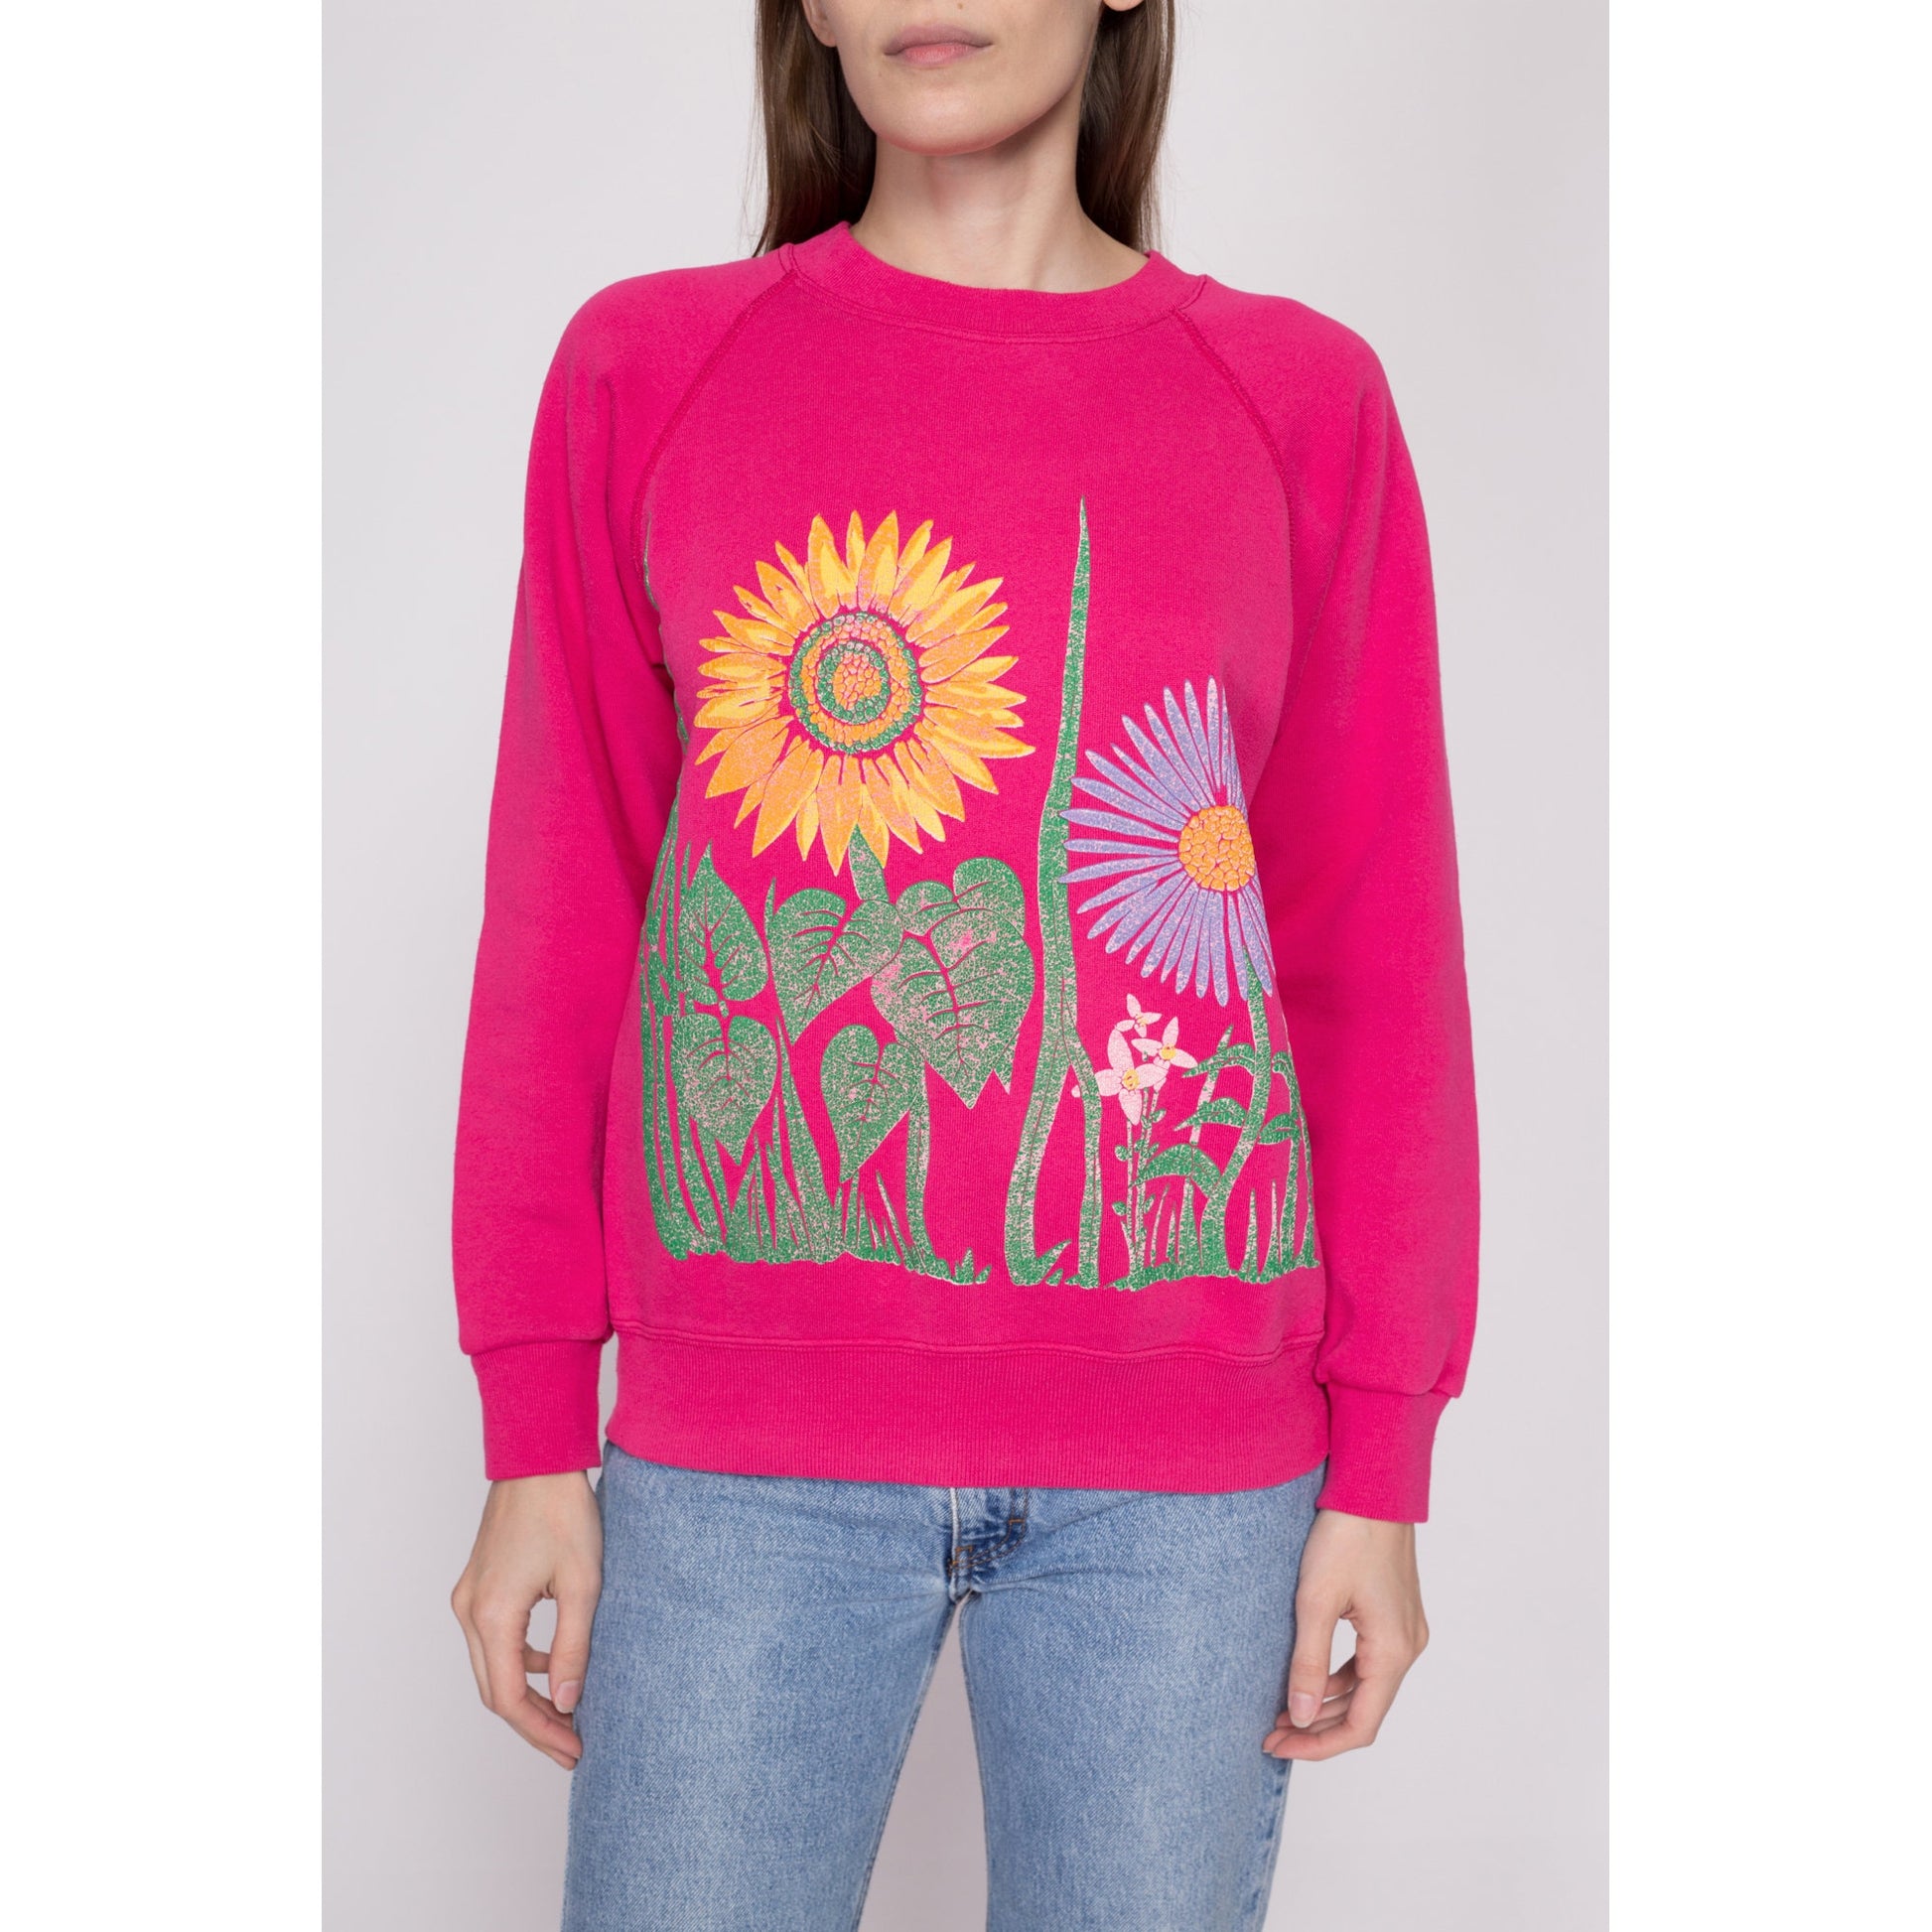 M| 80s Hot Pink Flower Garden Sweatshirt - Medium | Vintage Floral Graphic Crewneck Pullover